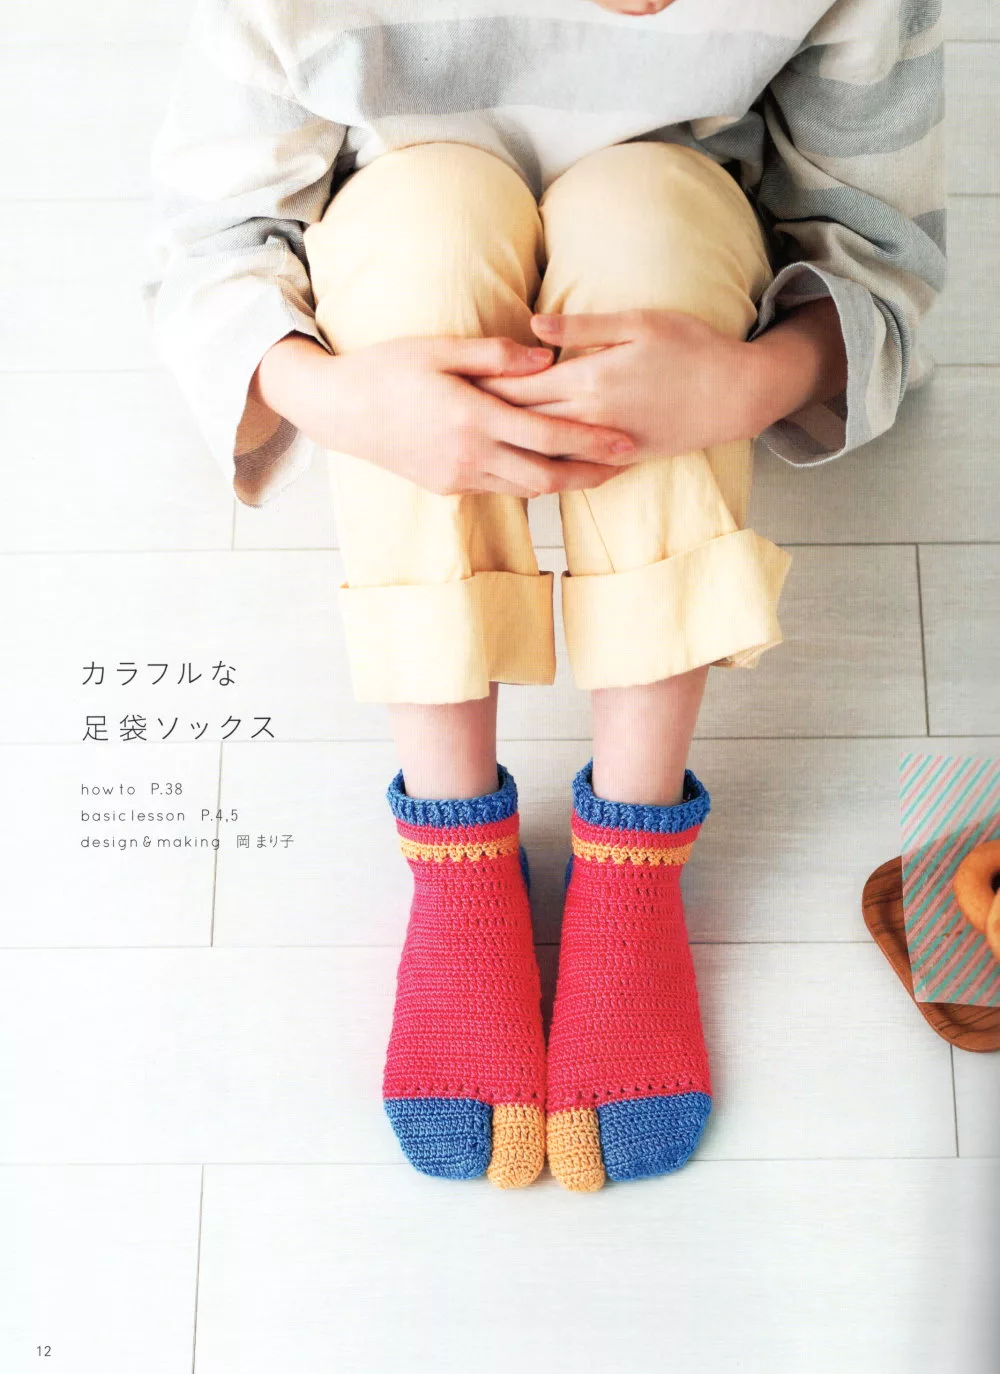 彩色編織襪